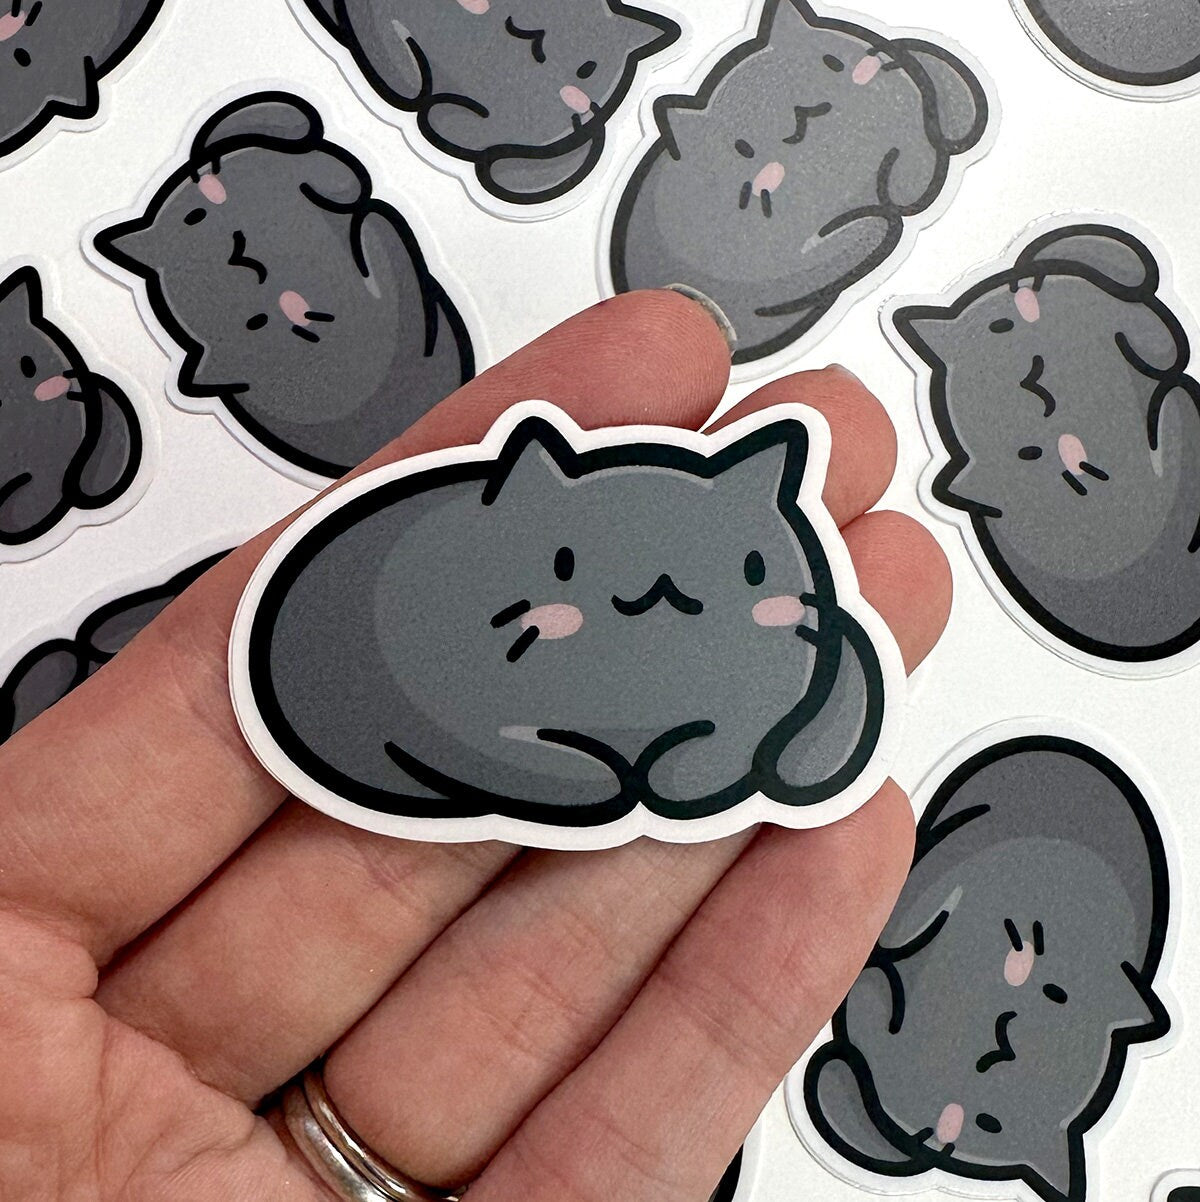 Black Cat Mini Sticker